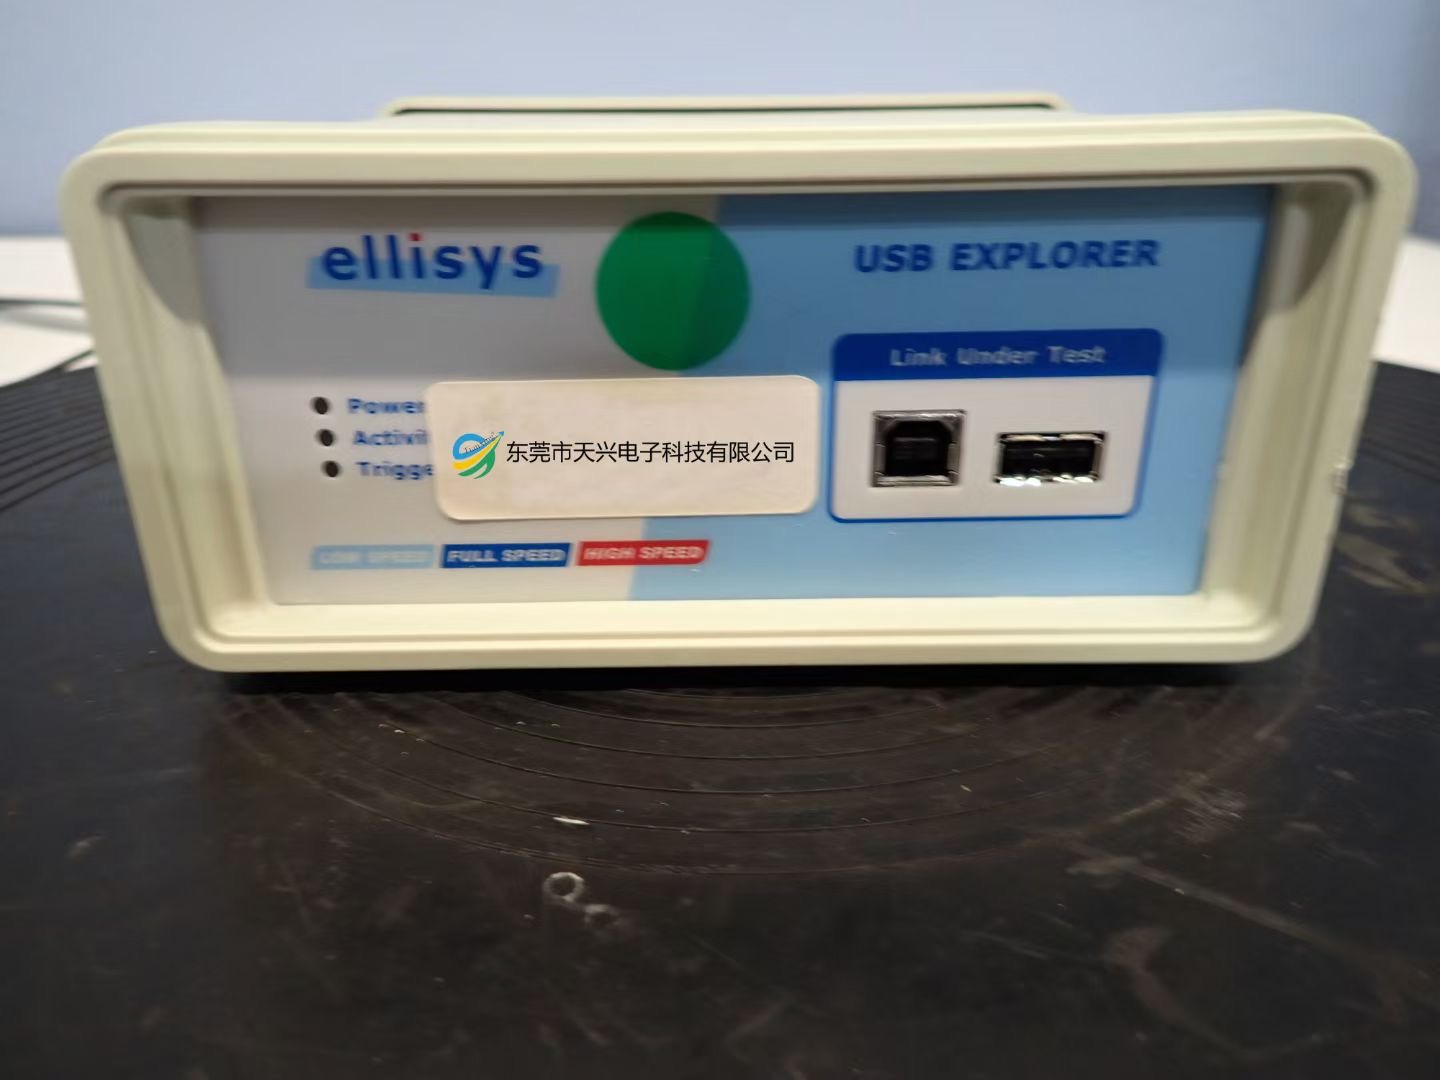 Ellisys USB Explorer 200 PRO  USB2.0Э